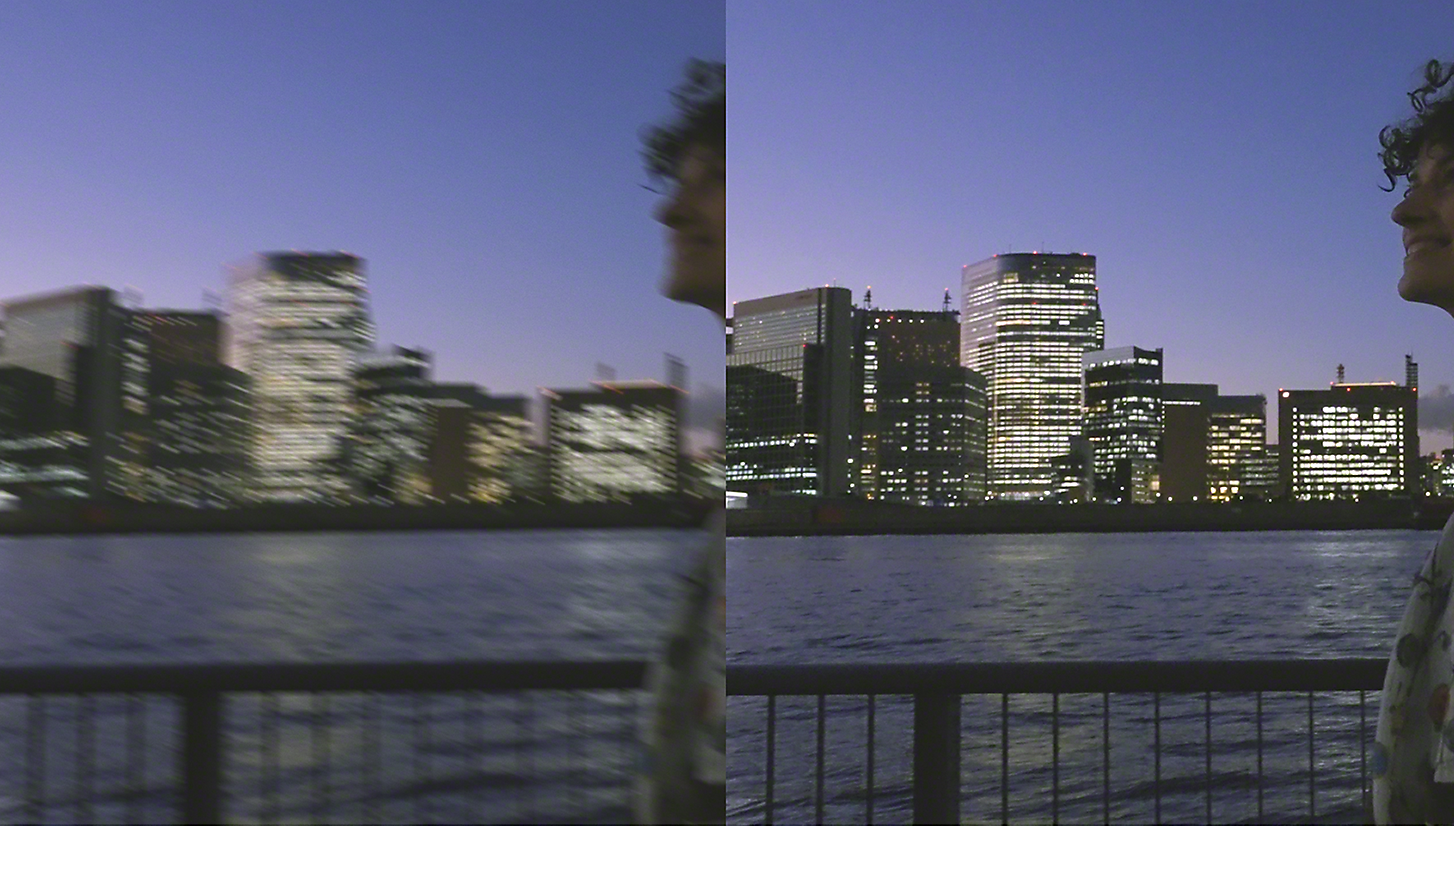 Zweifache Darstellung einer Stadtlandschaft bei Nacht – das linke Bild ist verschwommen, das rechte ist klar und scharf